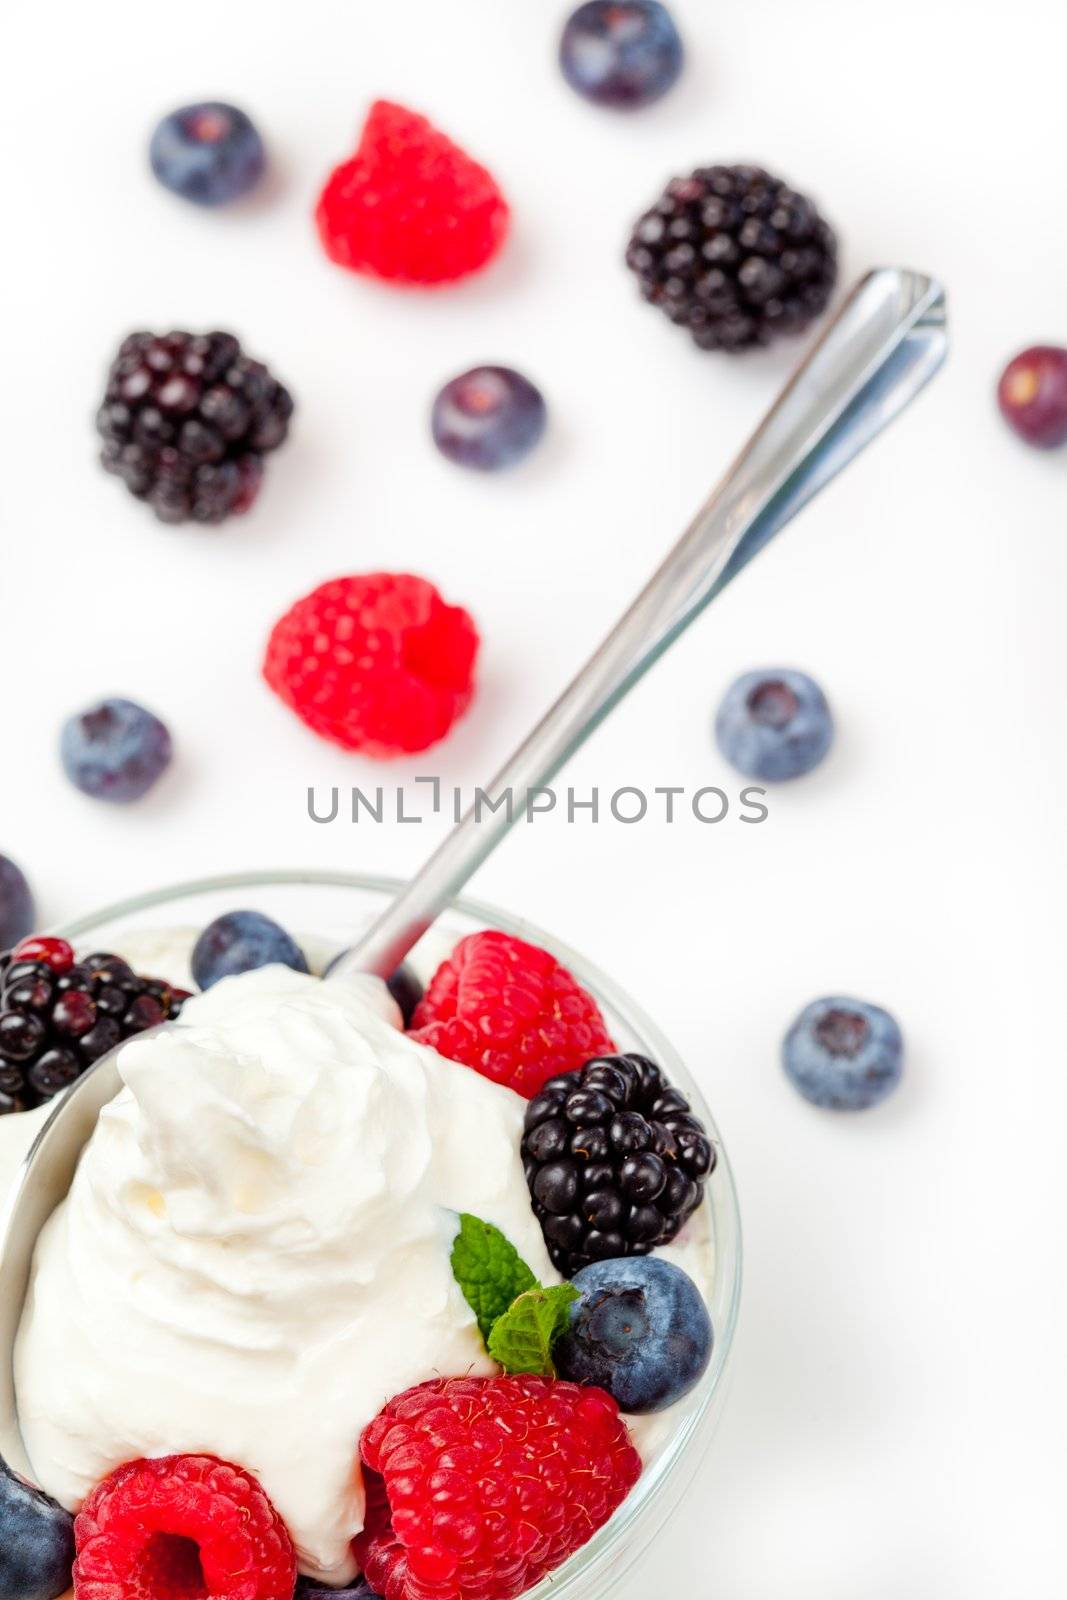 Dessert of berries by Wavebreakmedia